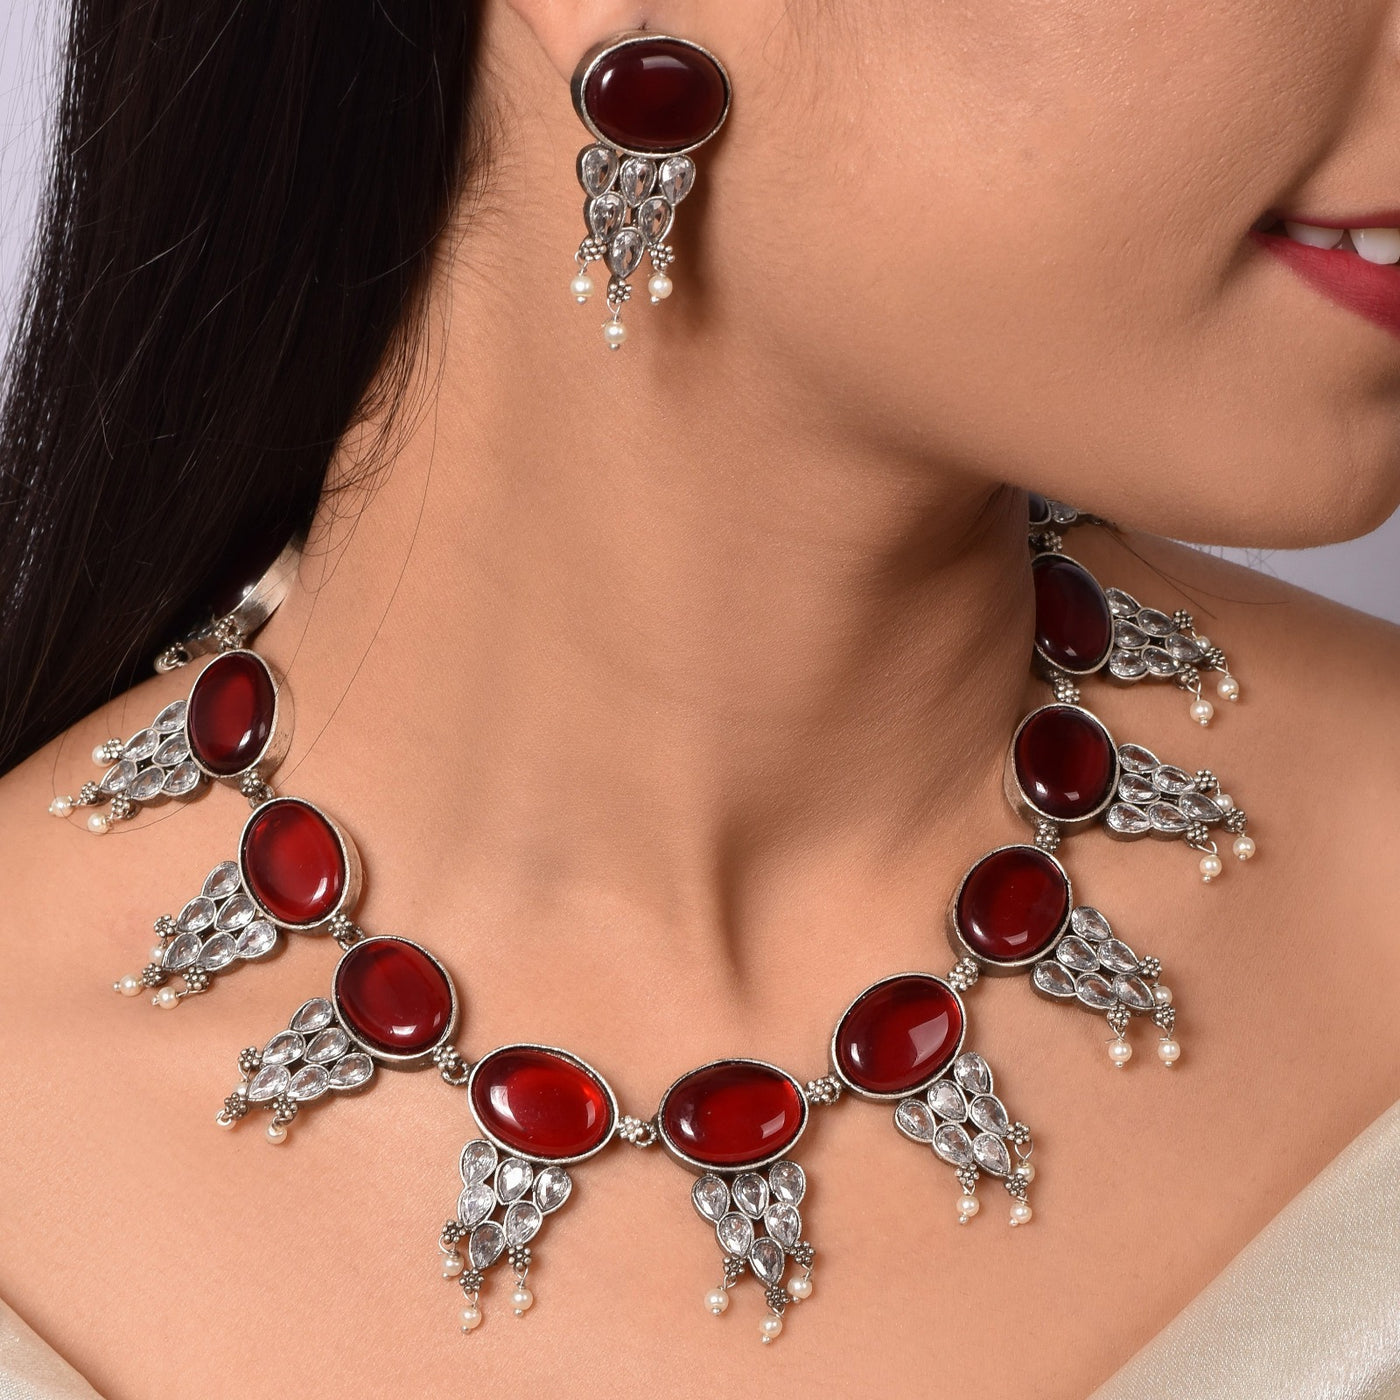 Ruhani Choker Necklace with Matching Earrings - xoiox